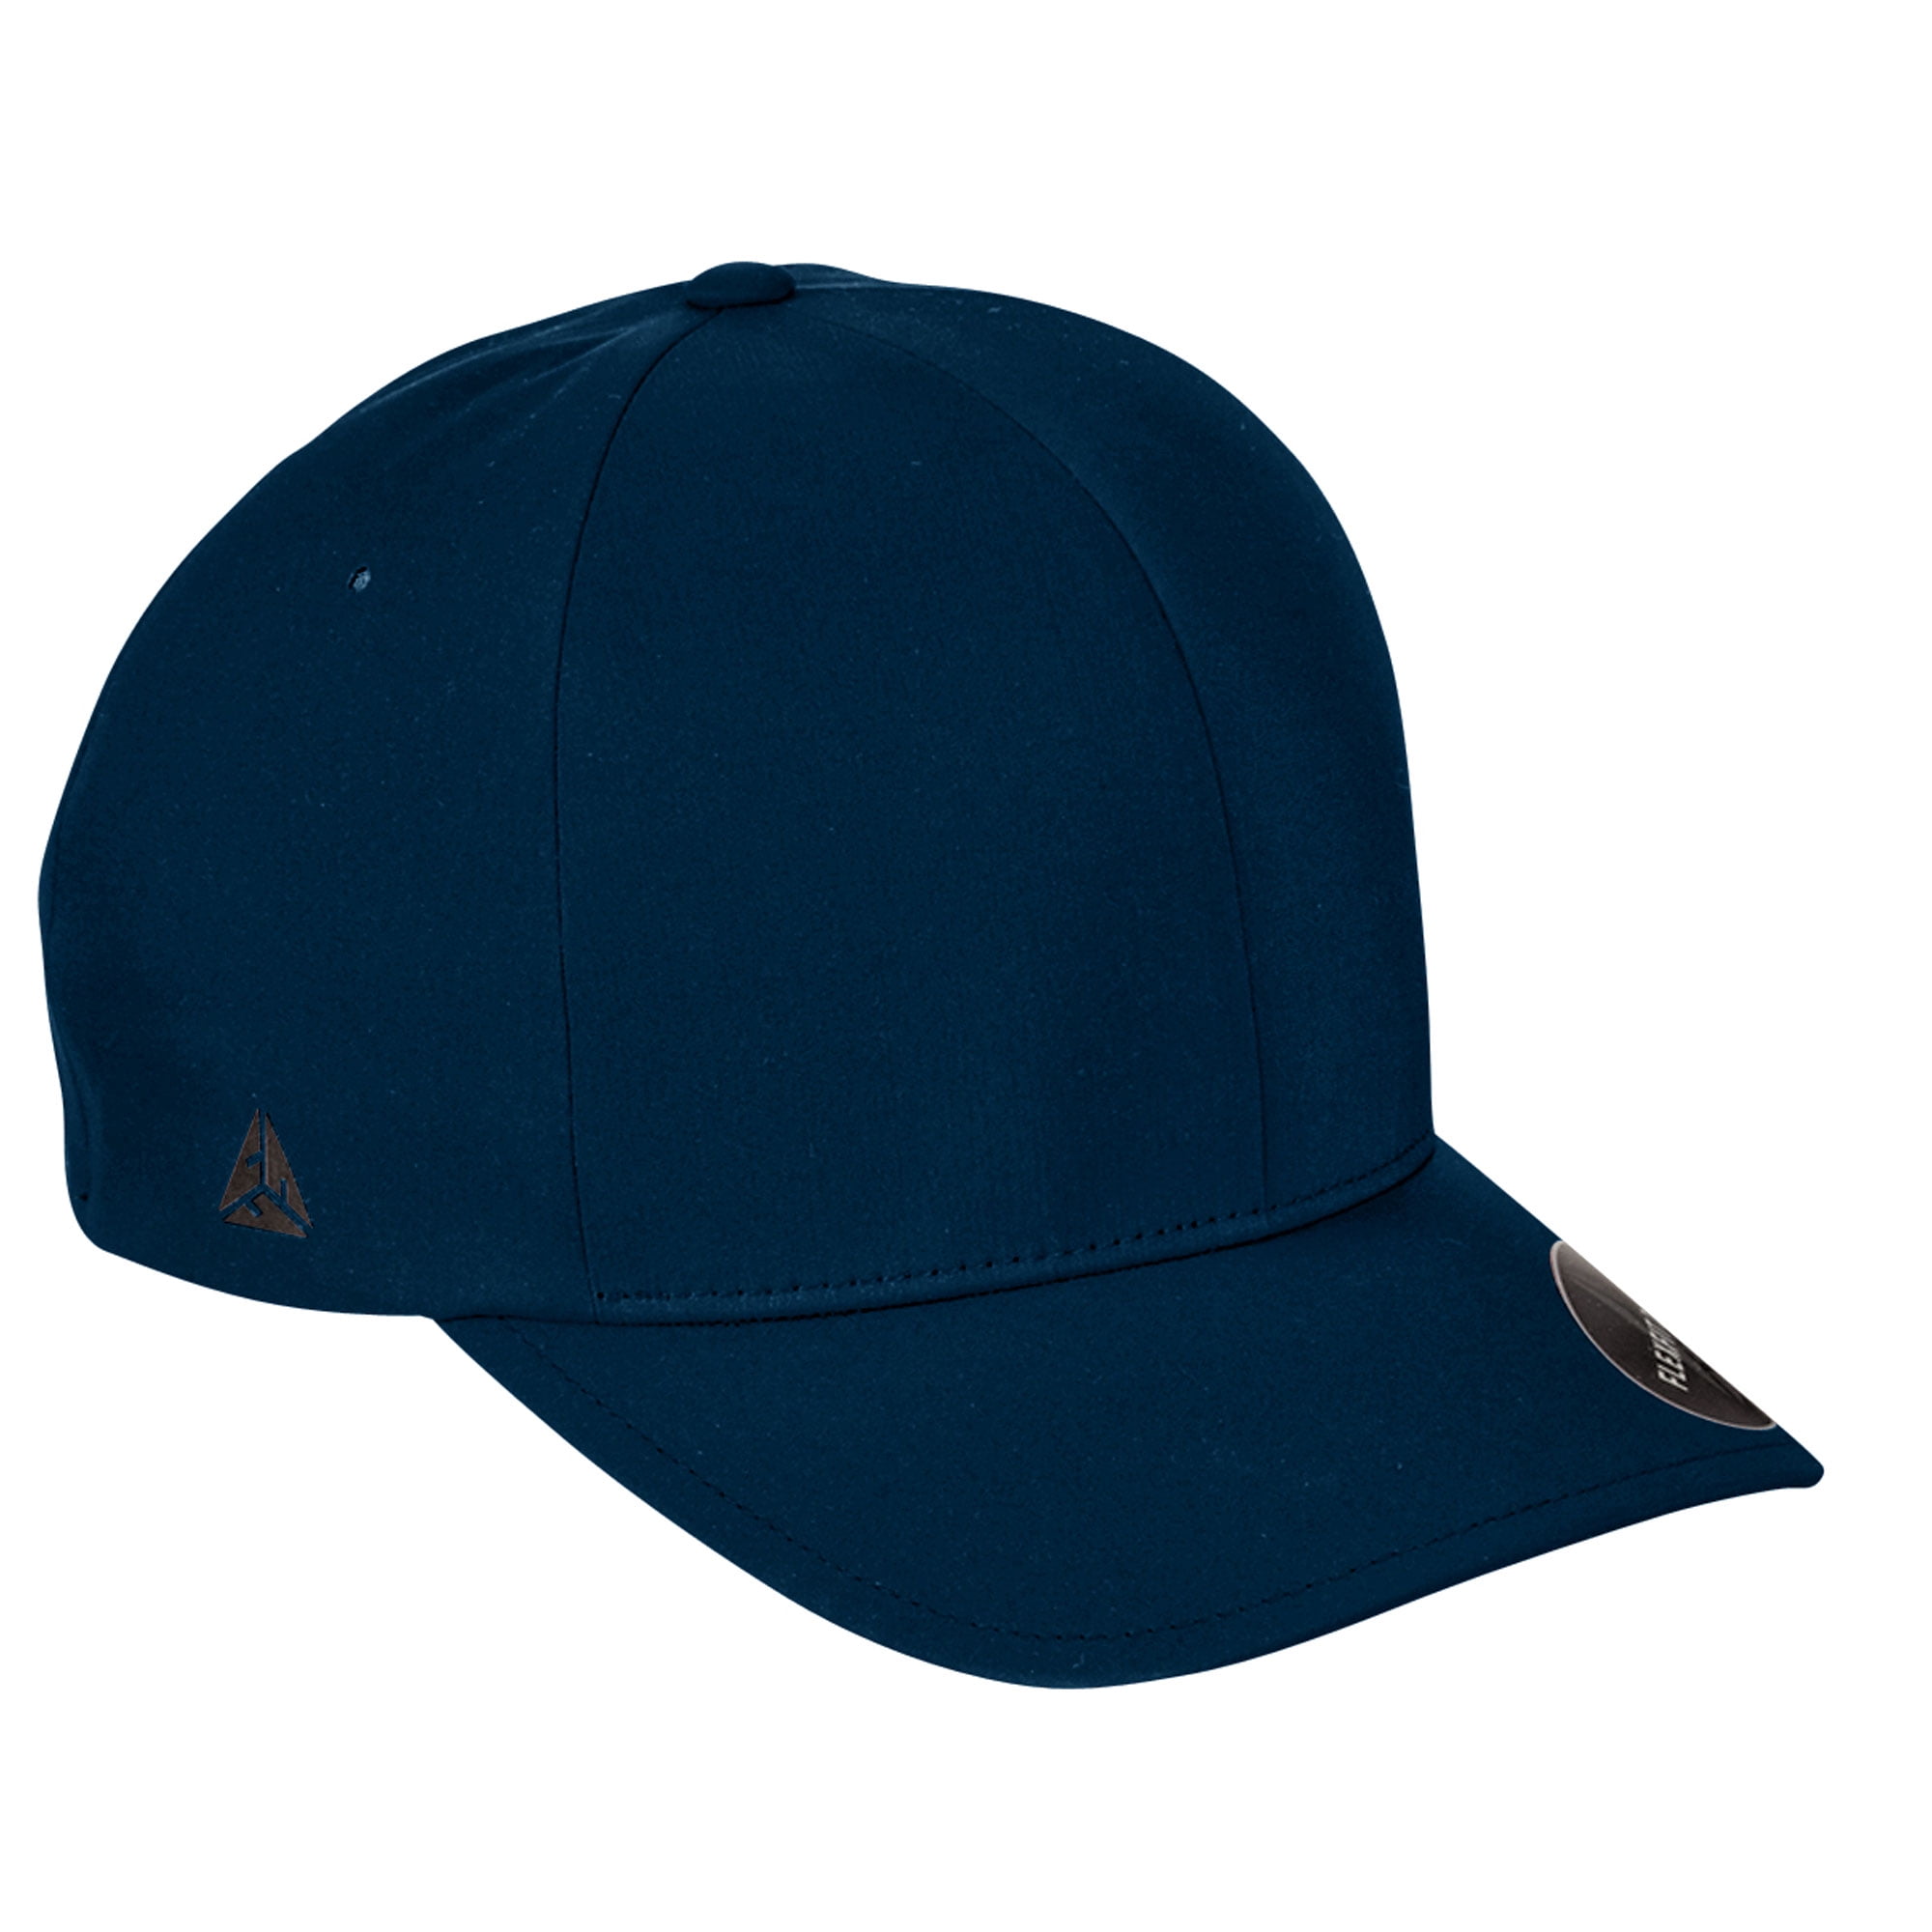 Premium Cap, Delta Style 180 Flexfit